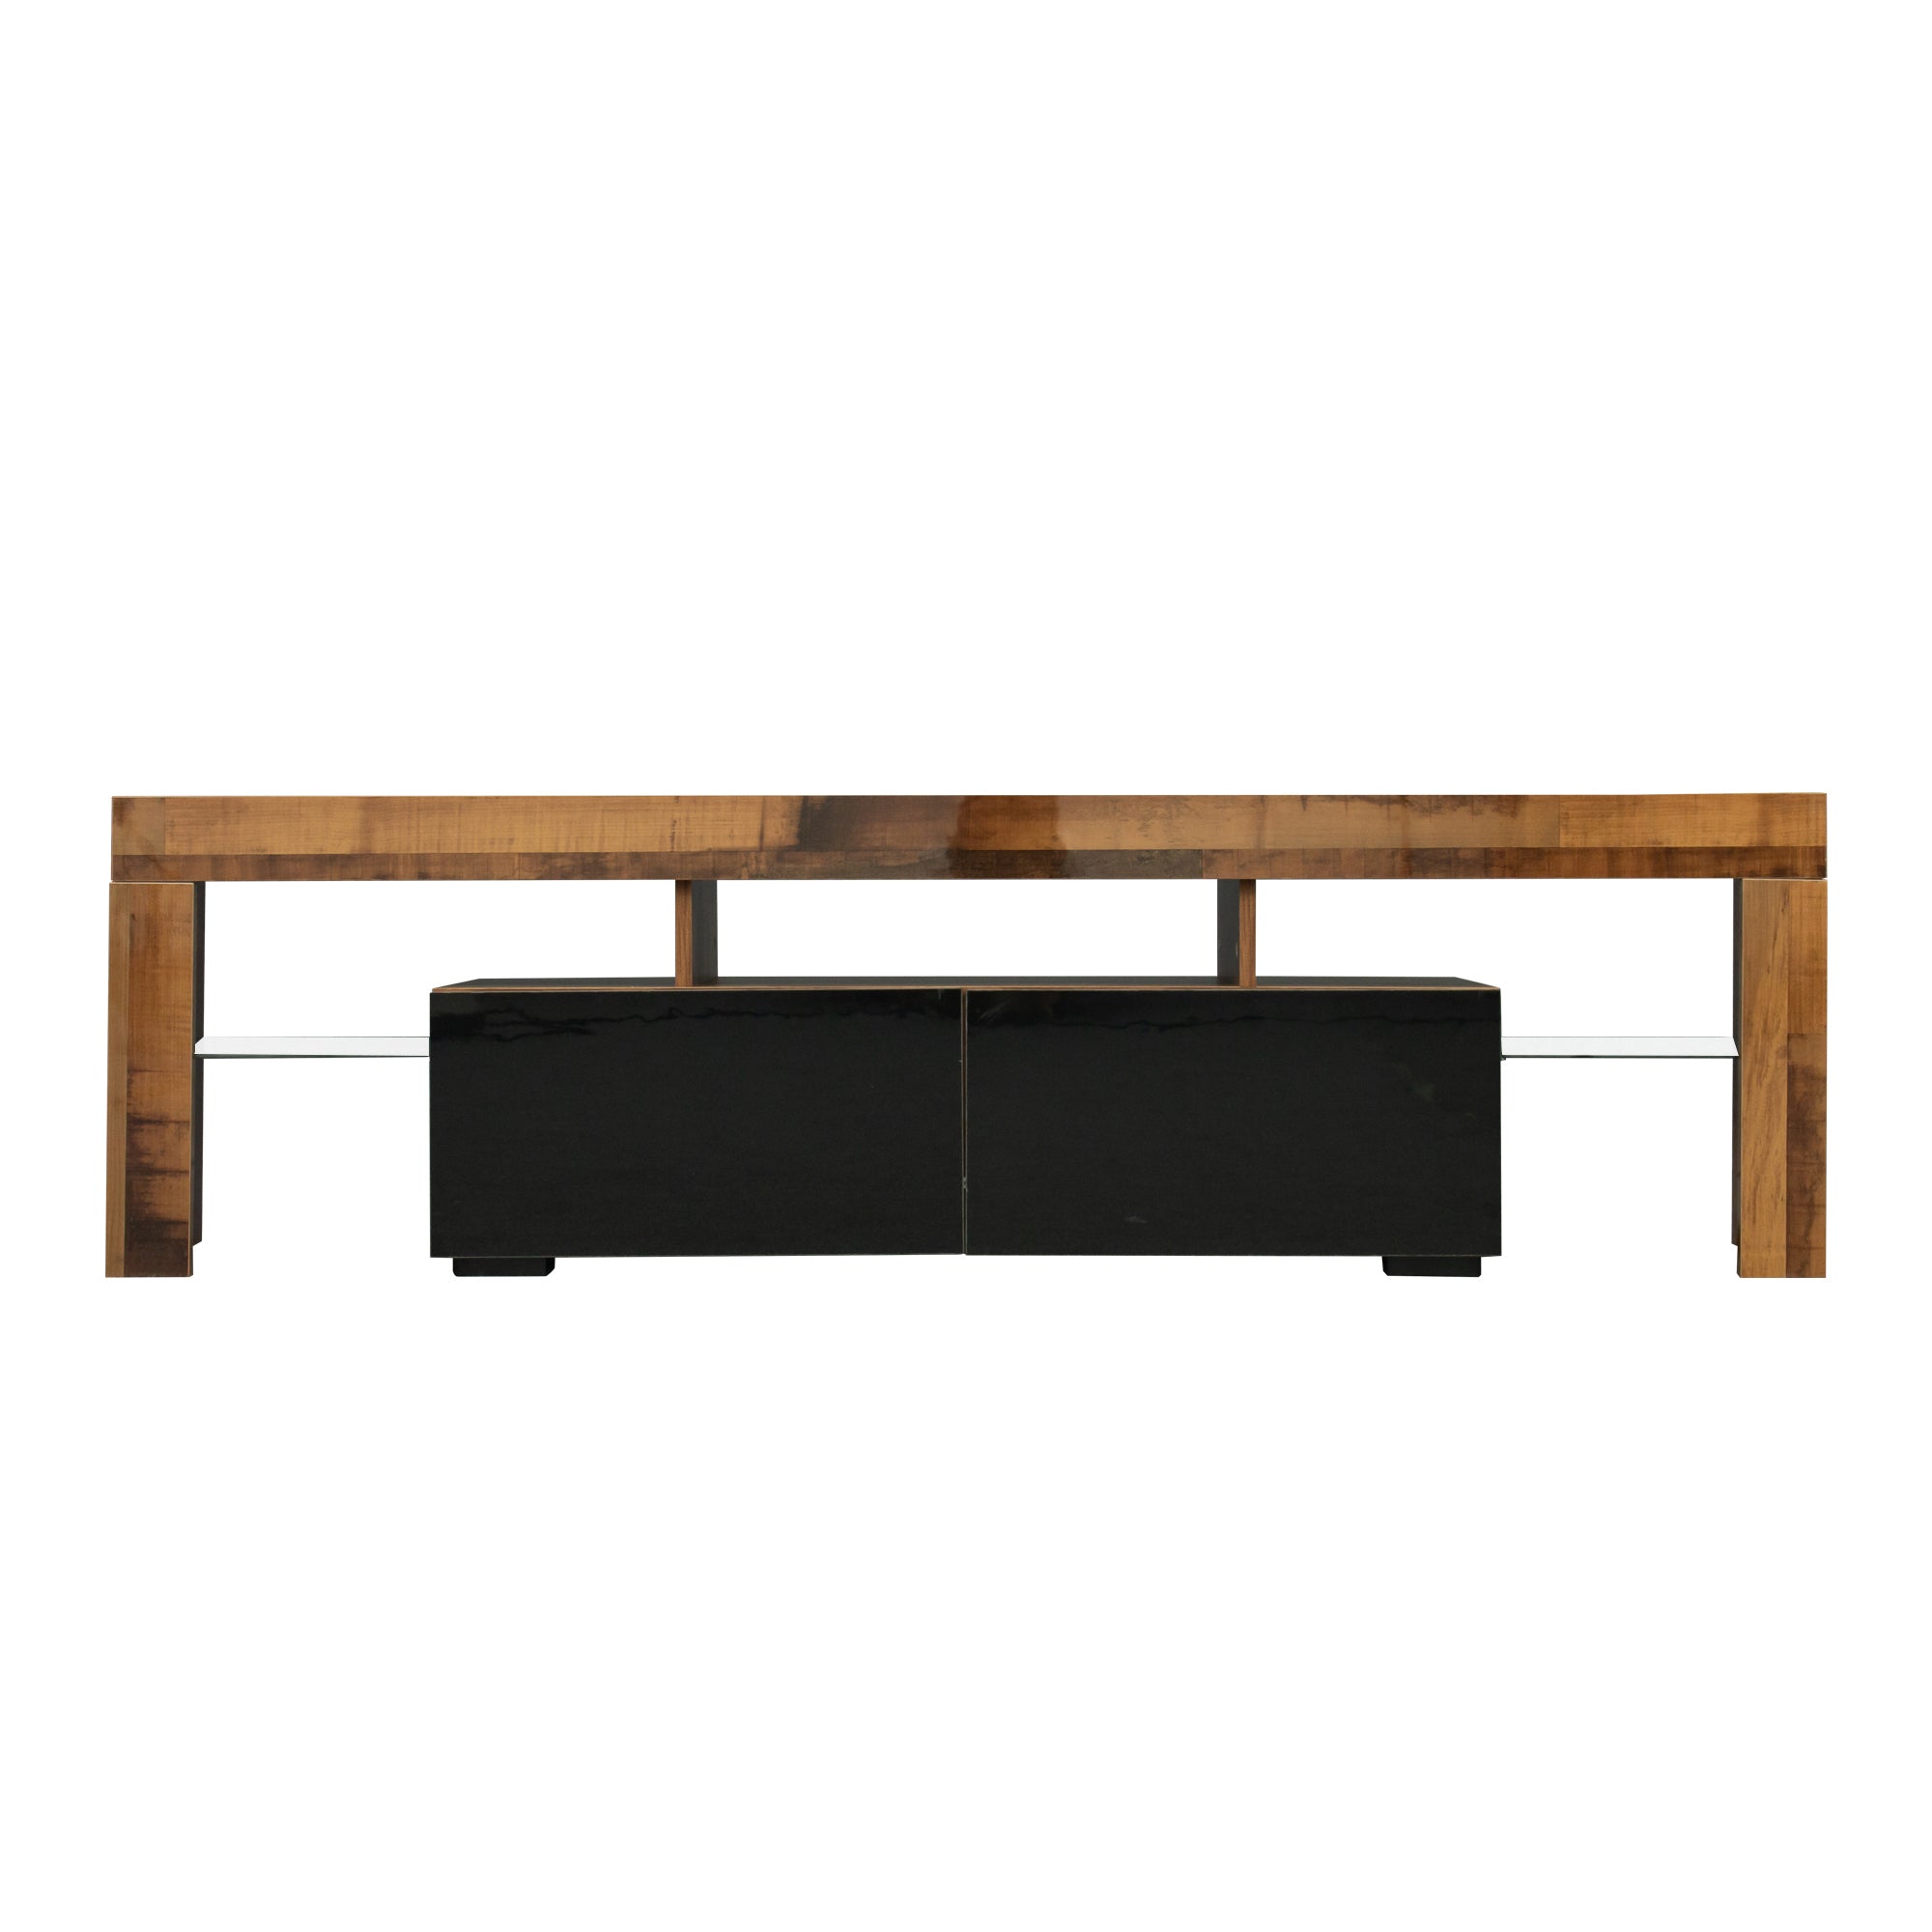 Living Room Furniture Simple Design TV Stand Cabinet Fir Wood,Black